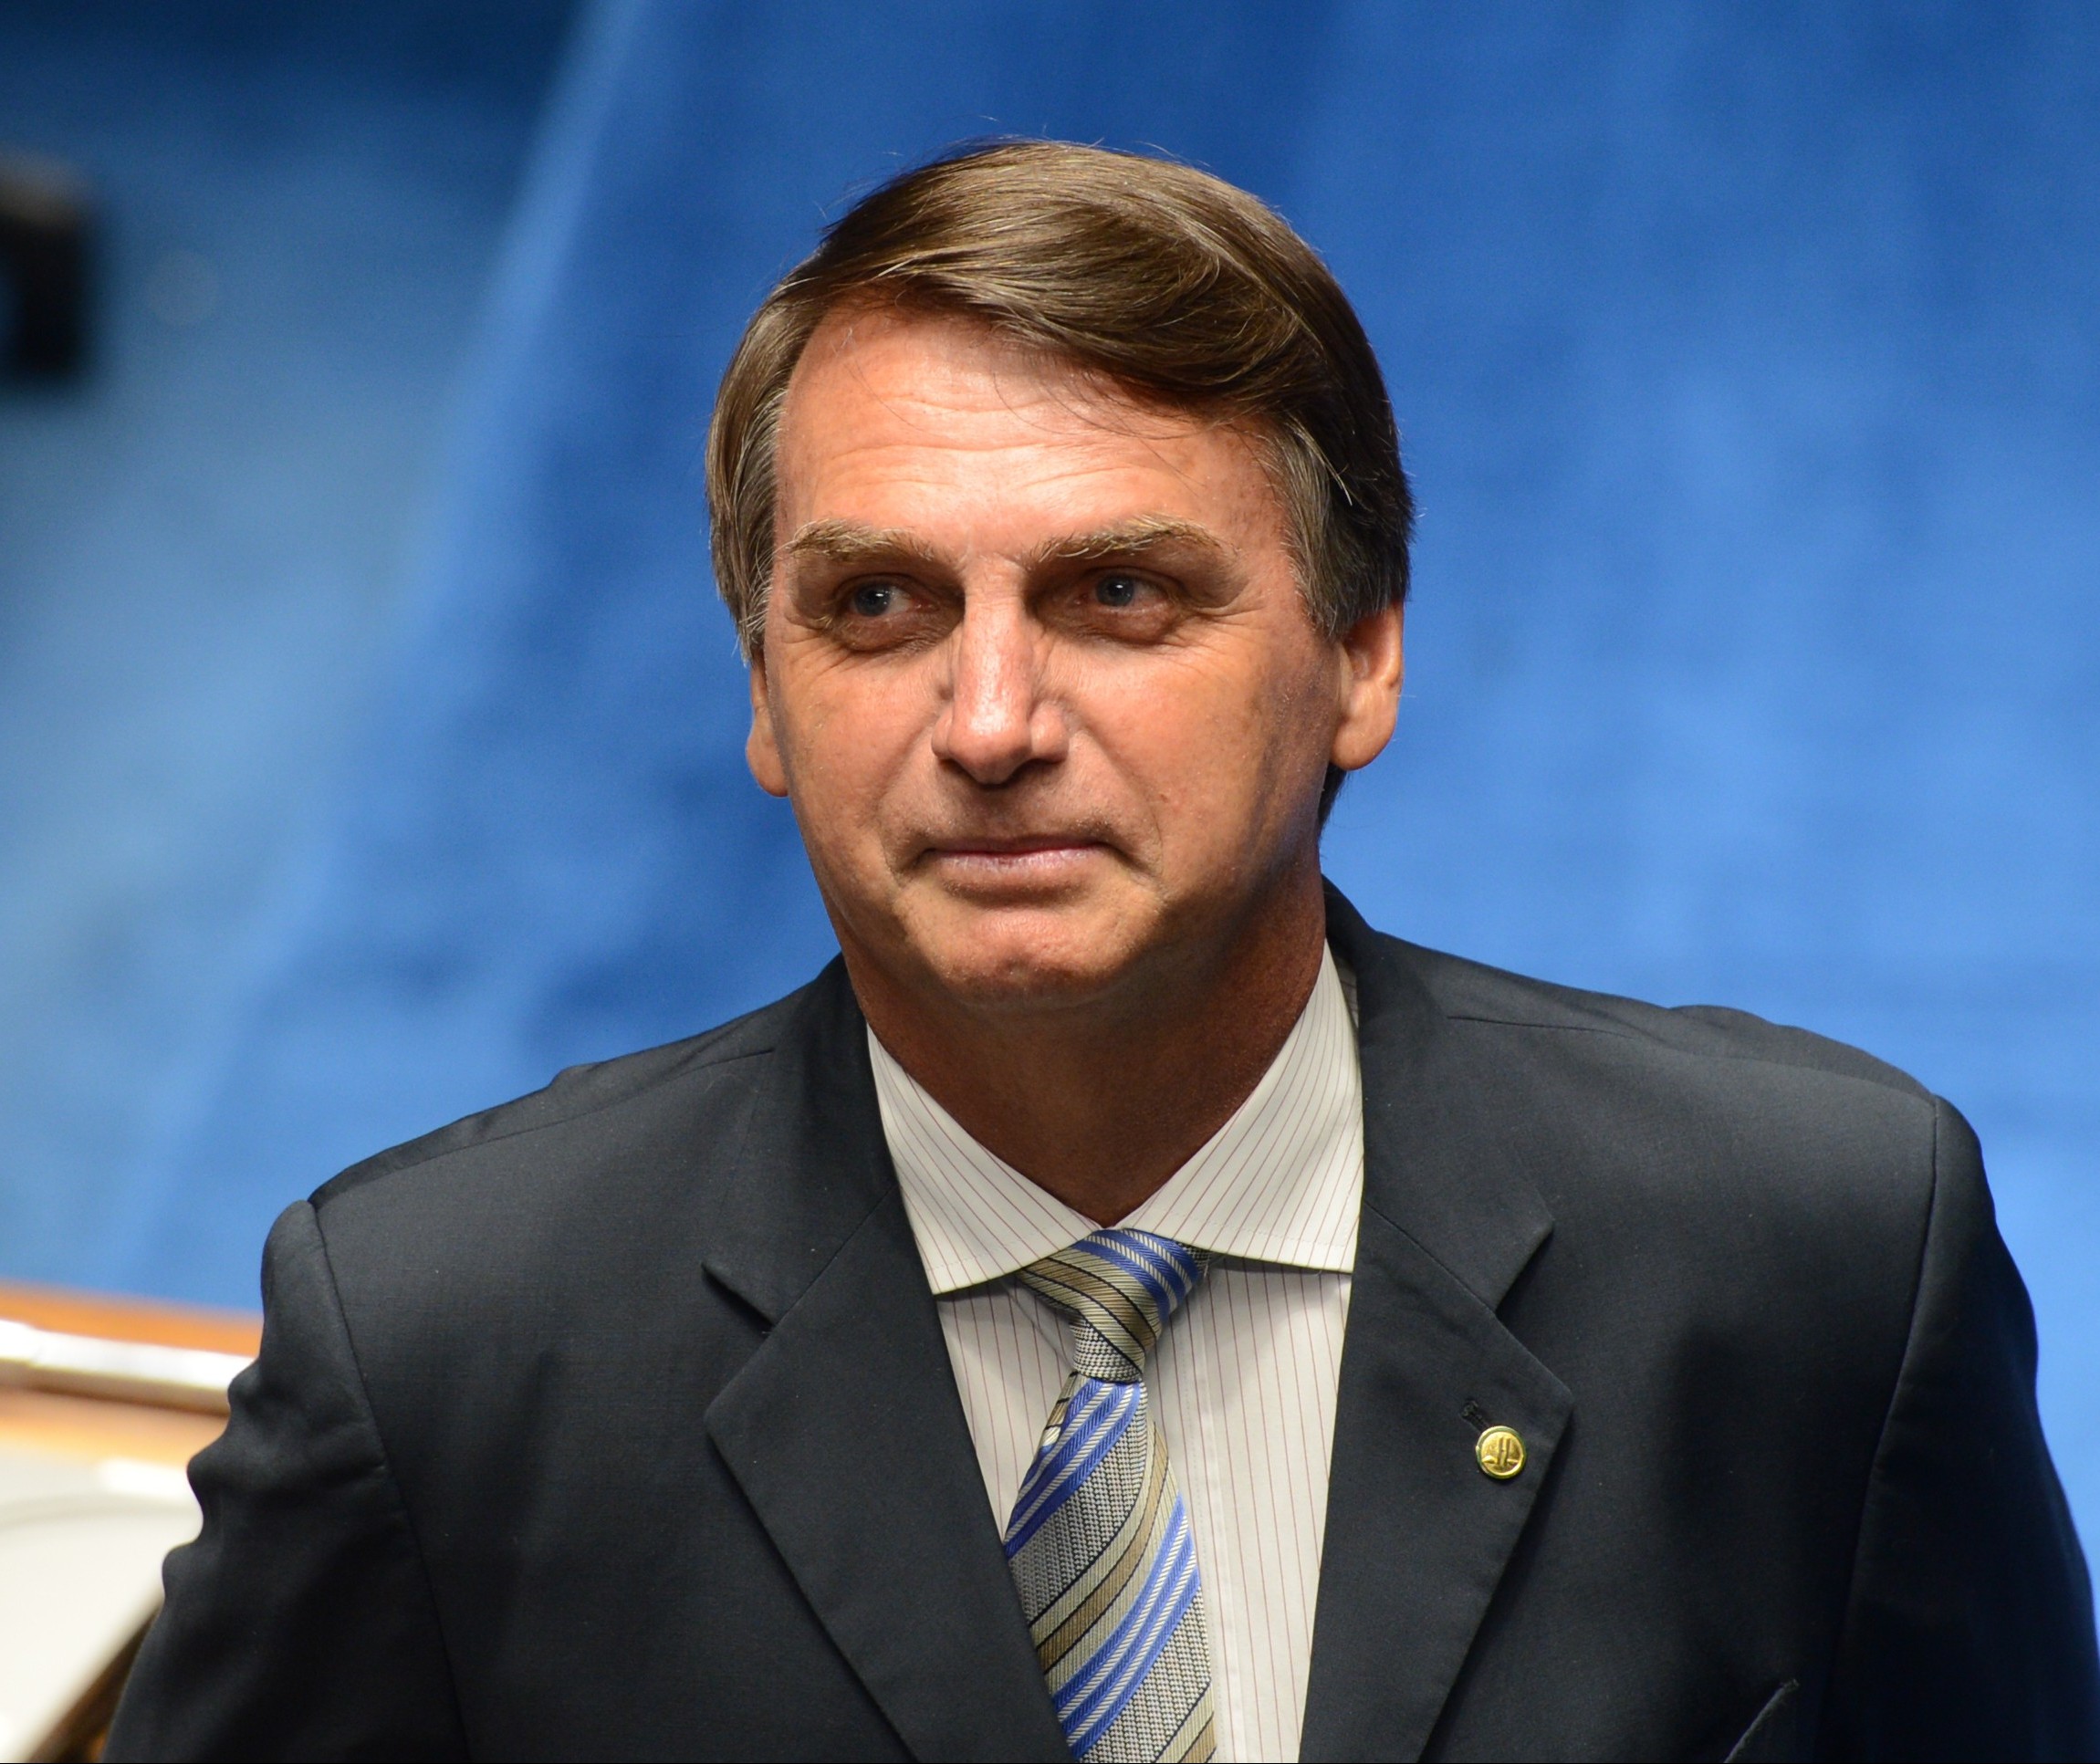 Prefeito avalia que vitória de Bolsonaro envolve mudança política